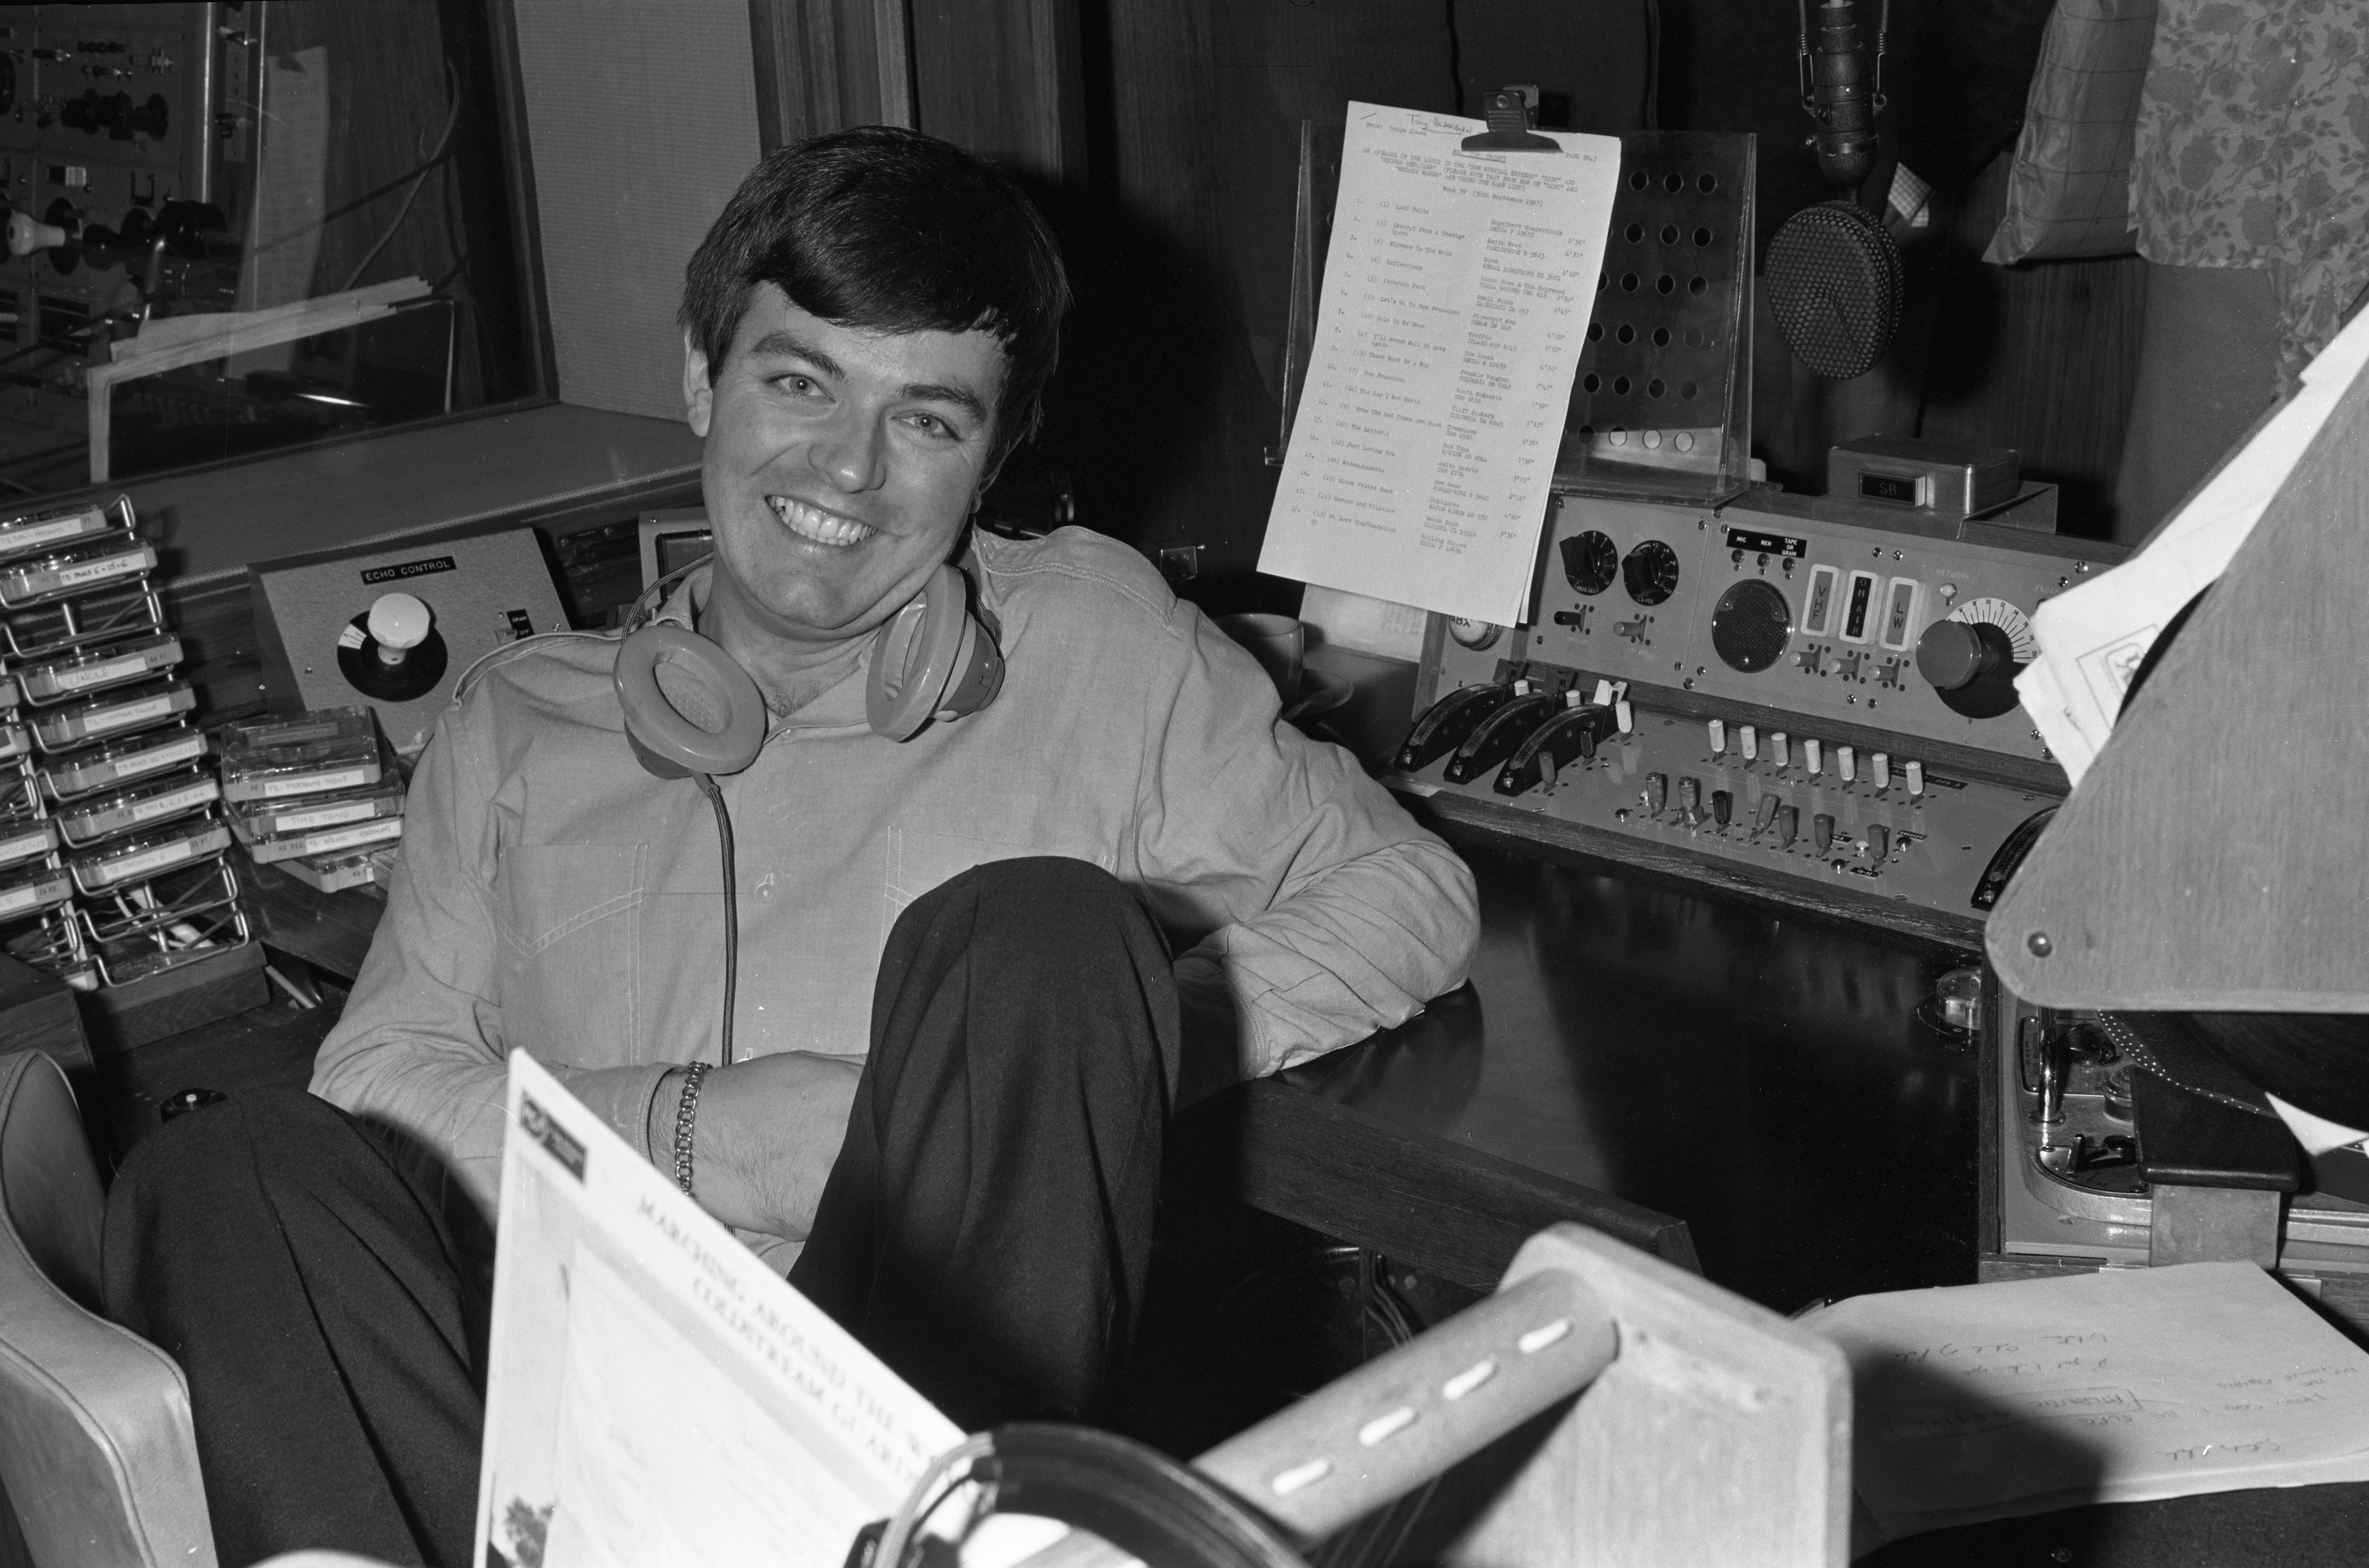 Radio DJ Tony Blackburn is sitting in a recording studio smiling